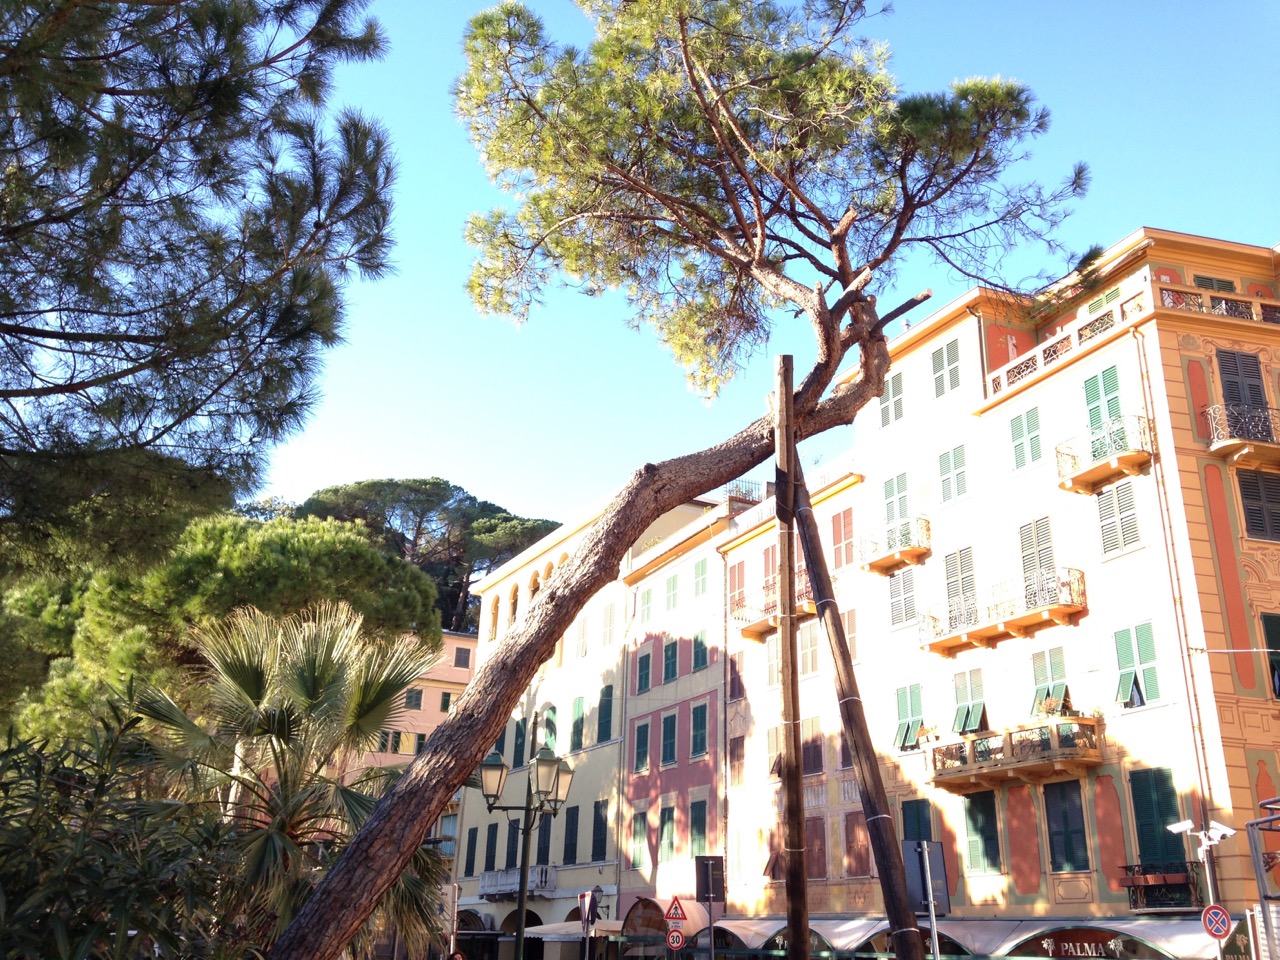 Lavori in corso a Santa Margherita Ligure per abbattere un pino ai Giardini a Mare